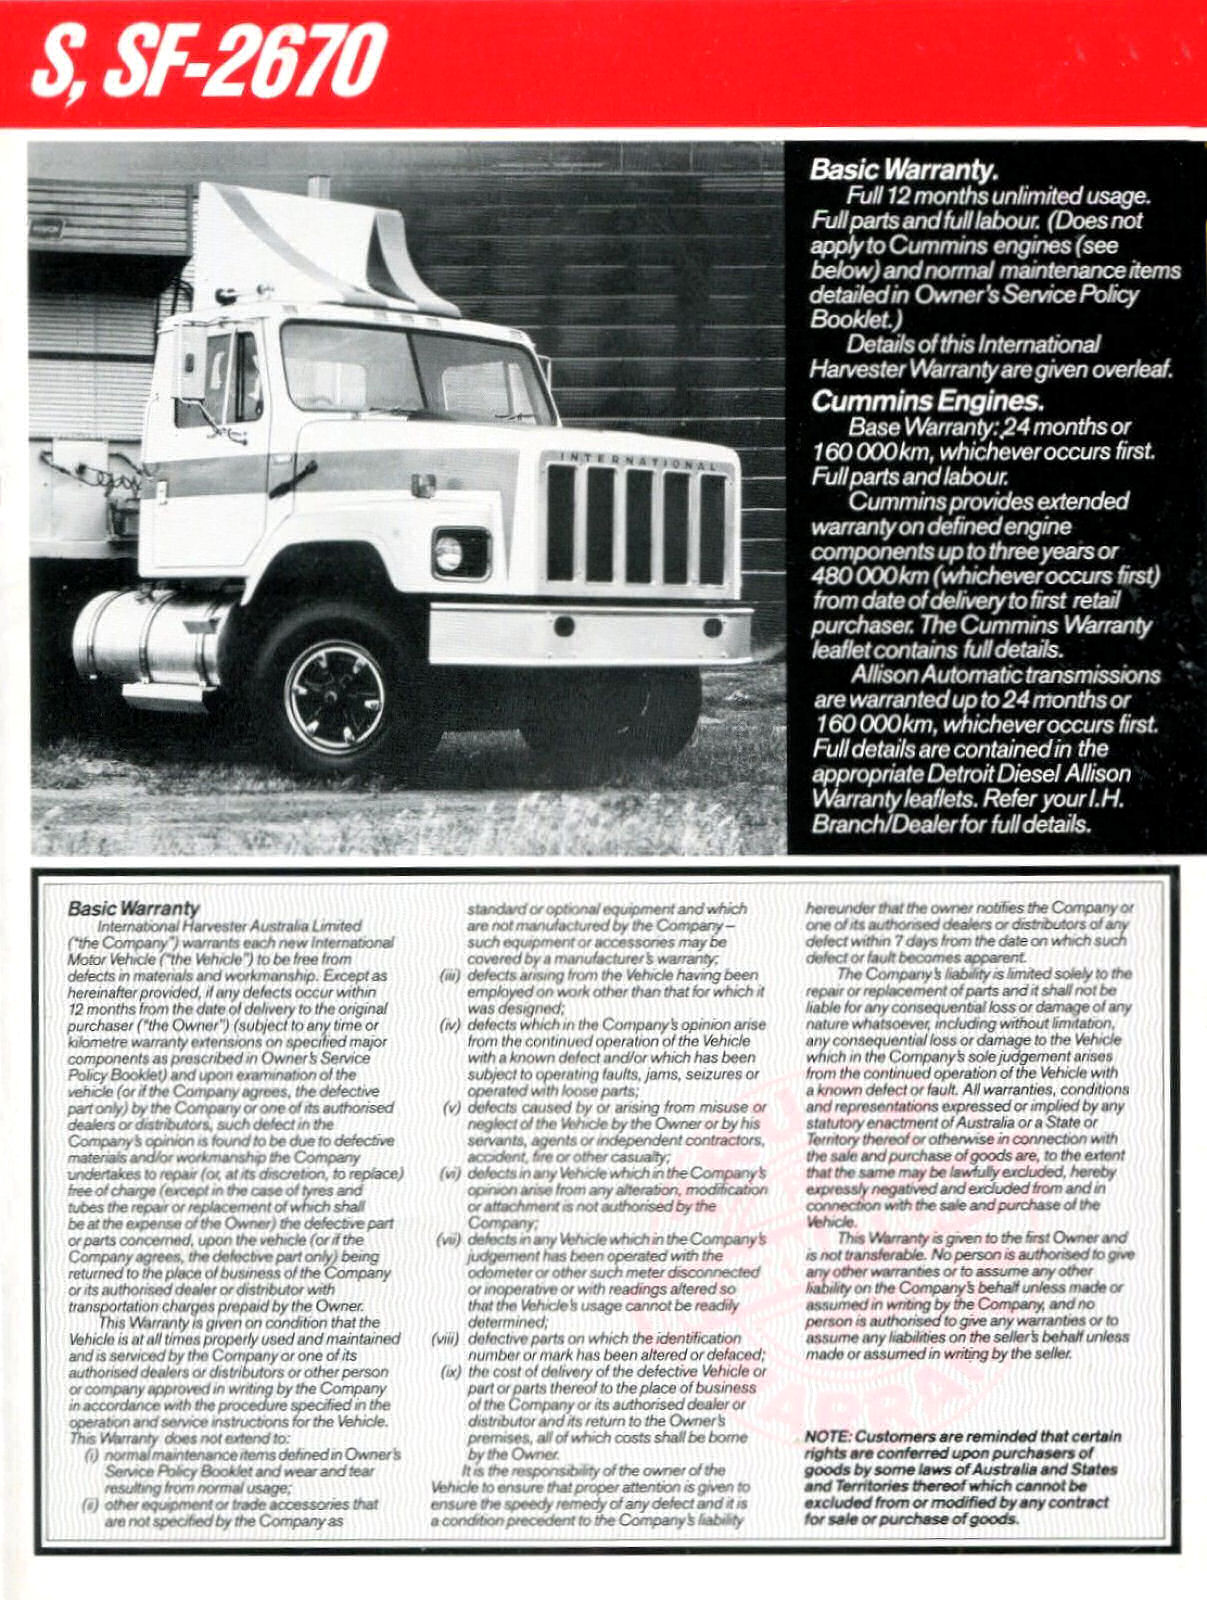 1985 International Truck Warranty (Aus)-04